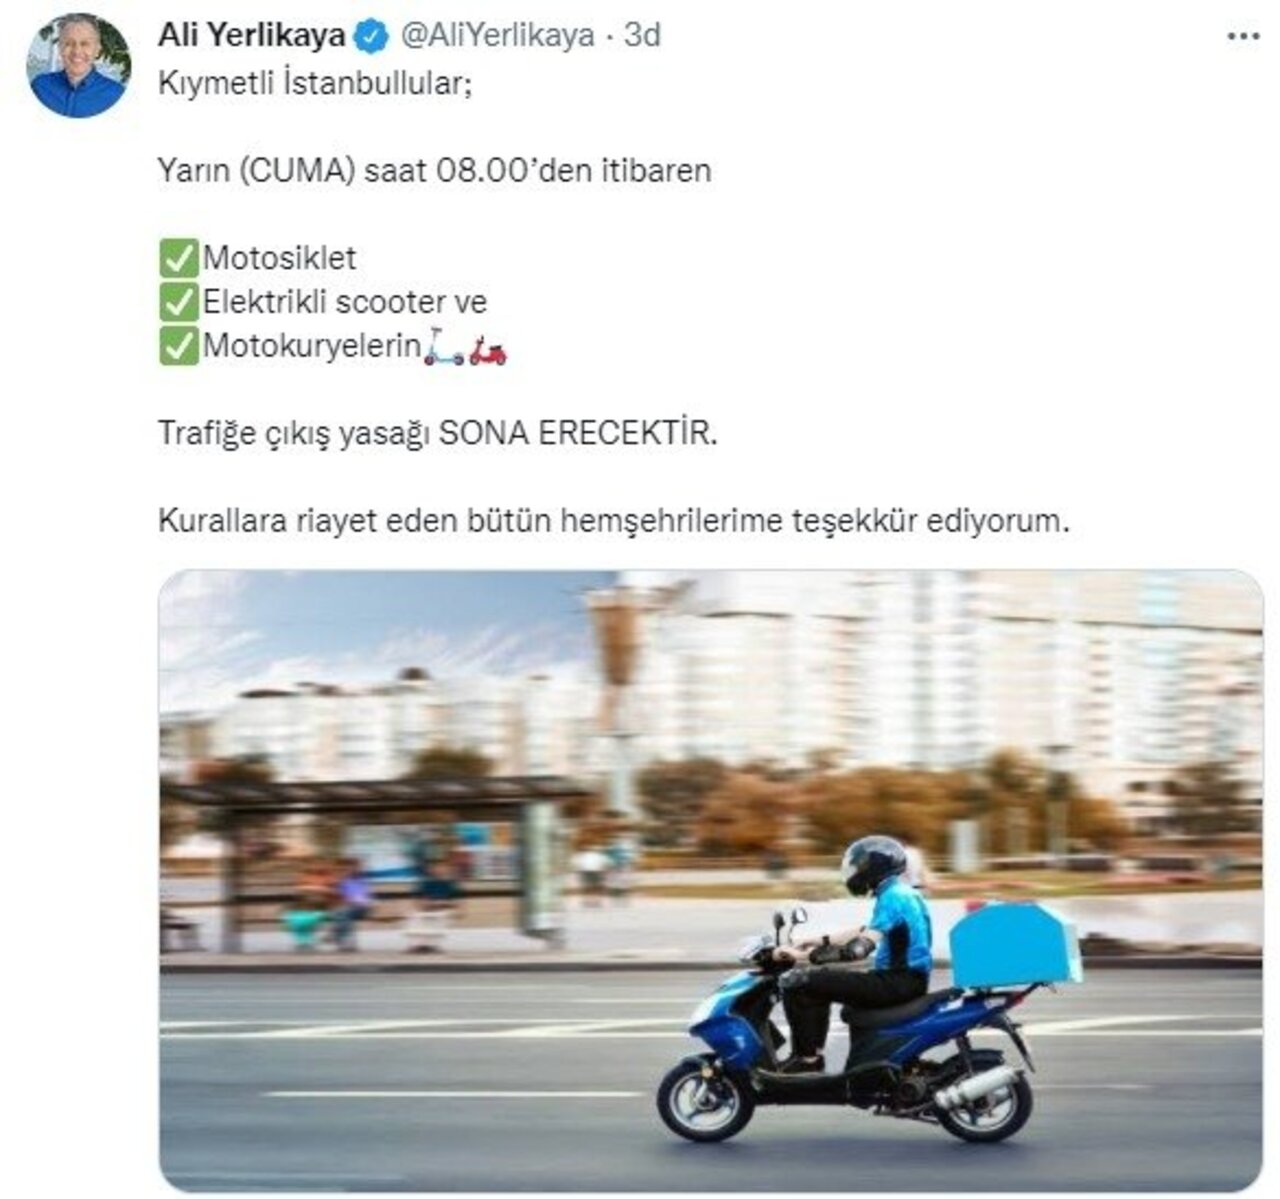 İstanbul'da motosiklet ve kuryeler için konulan yasak kaldırıldı!